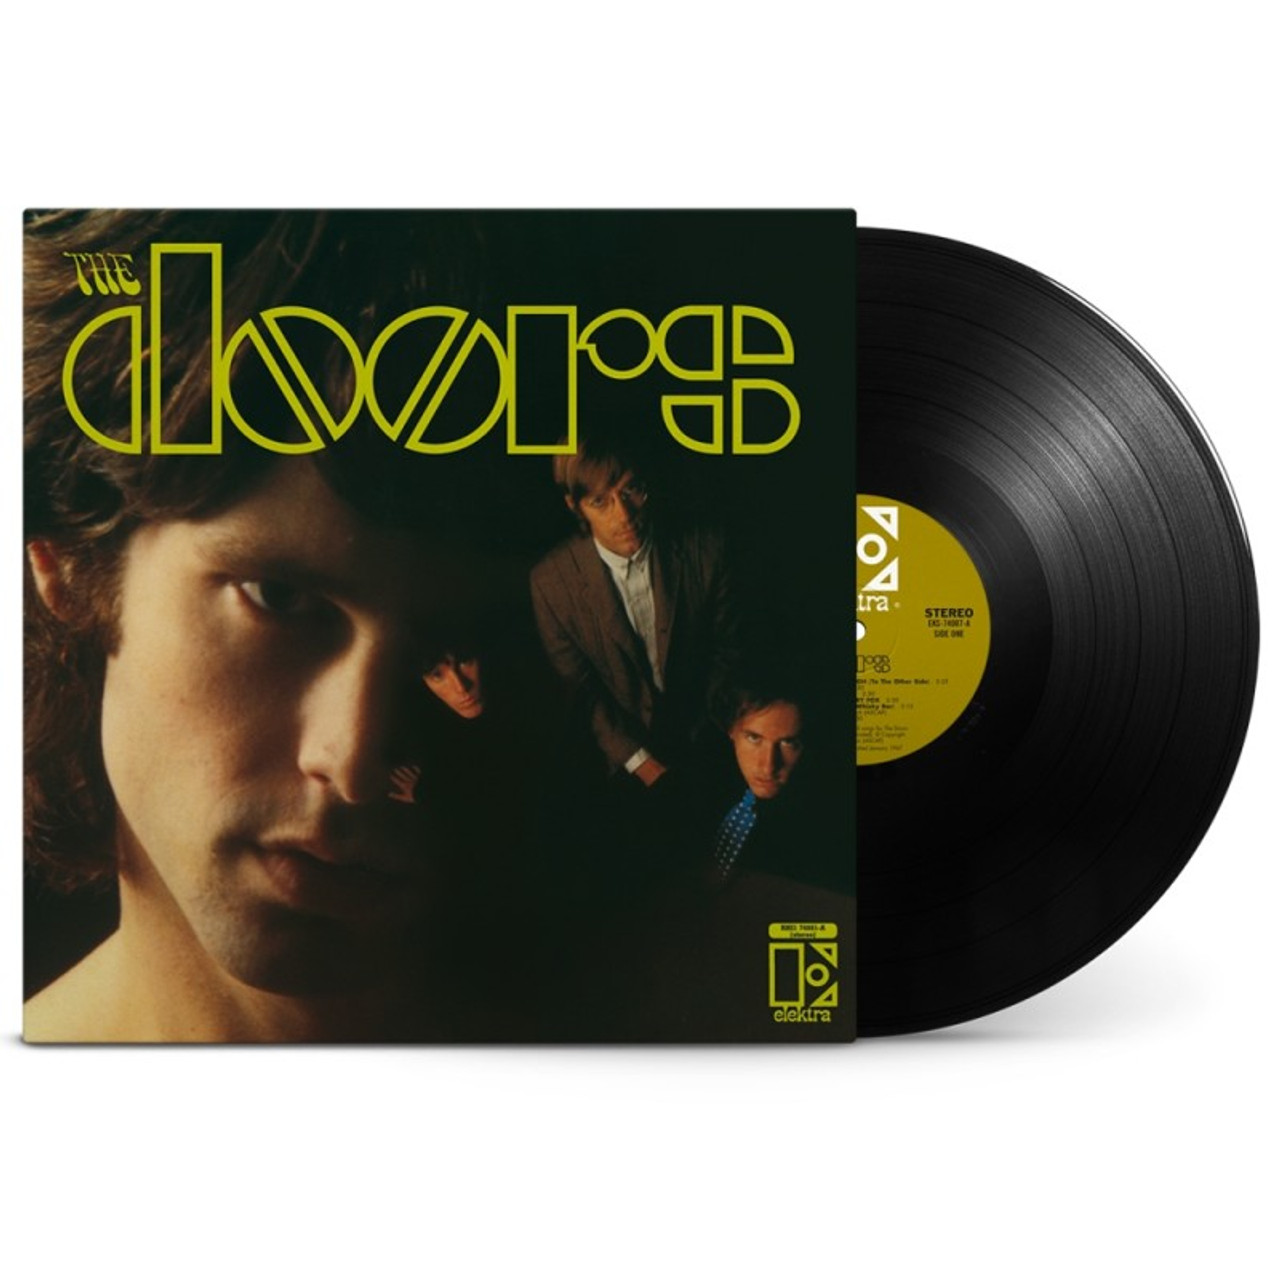 The Doors, The Doors album cover with vinyl disc